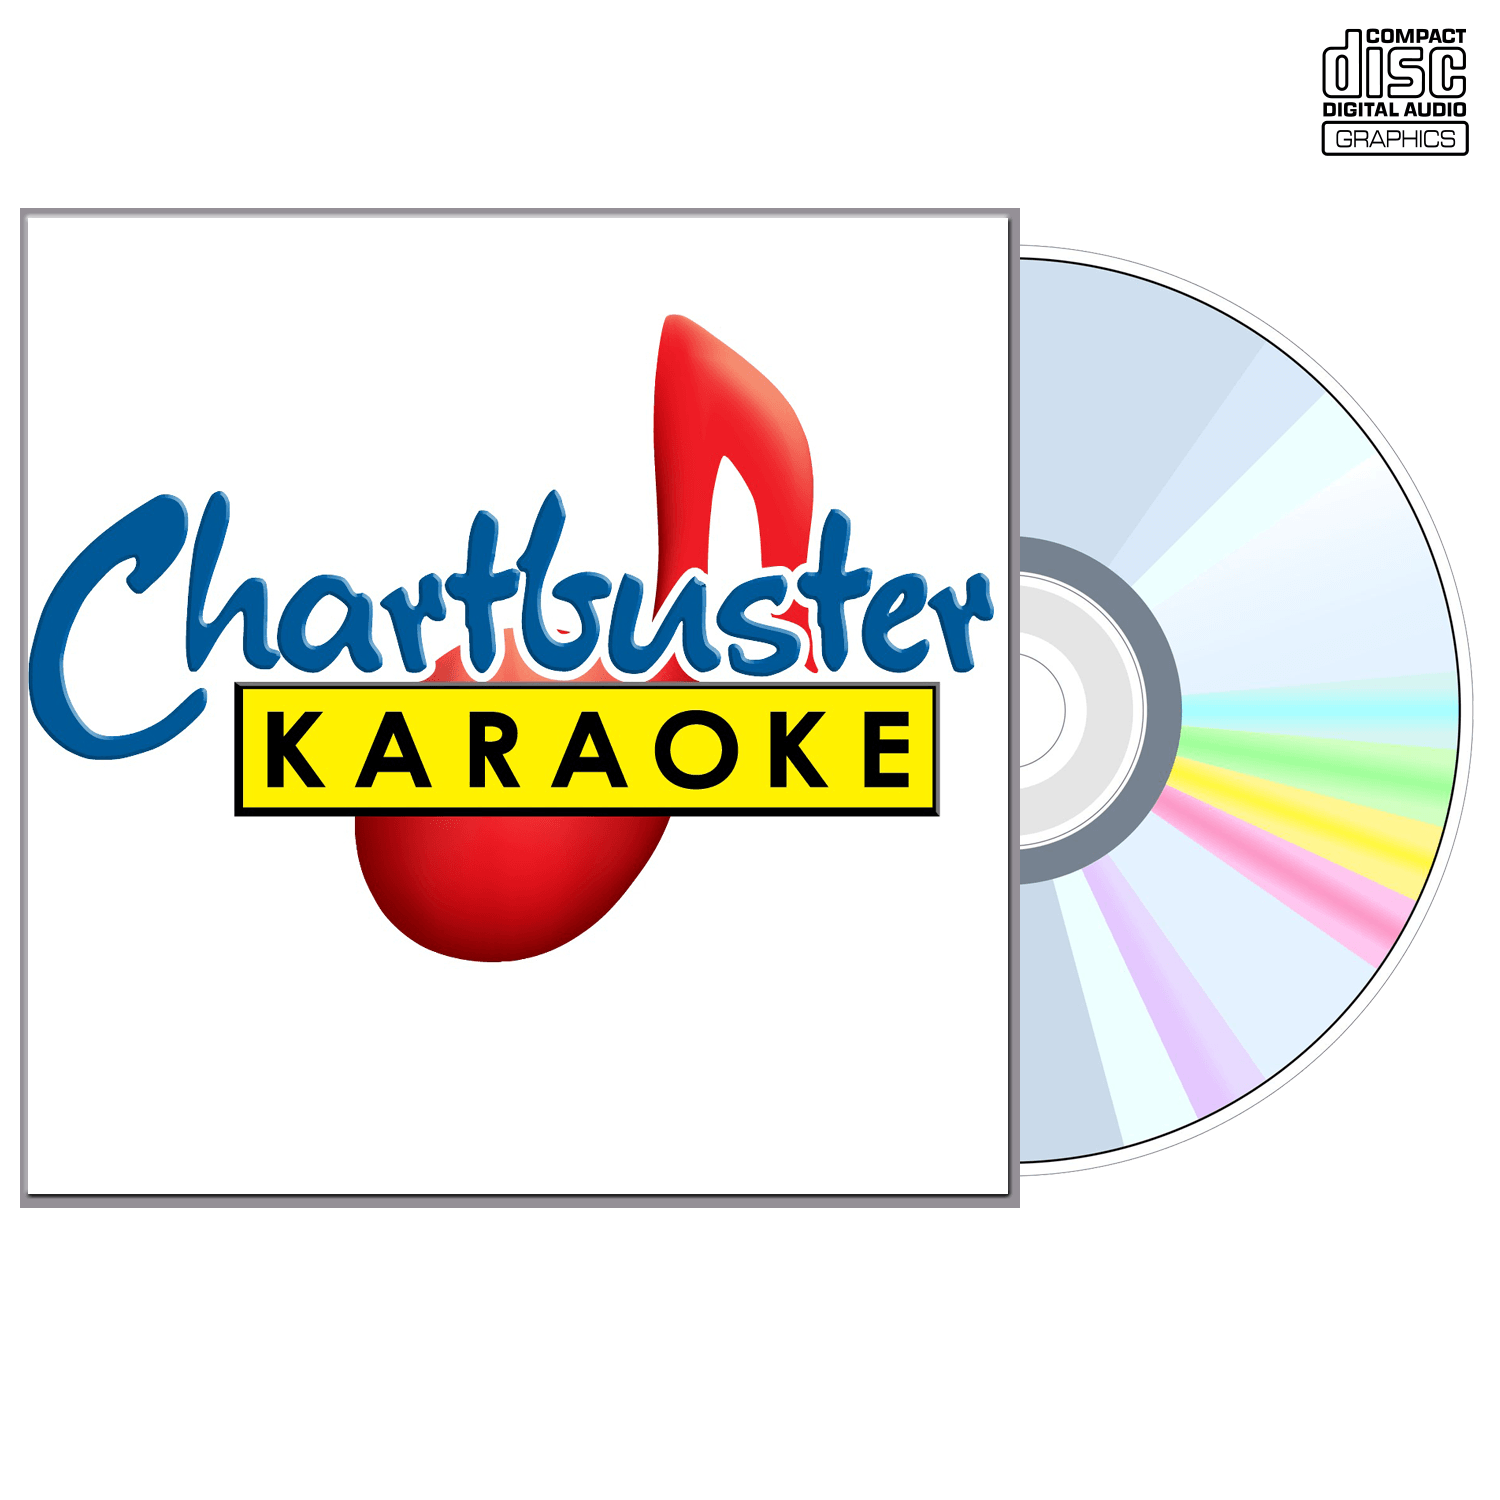 Babyface - CD+G - Chartbuster Karaoke - Karaoke Home Entertainment